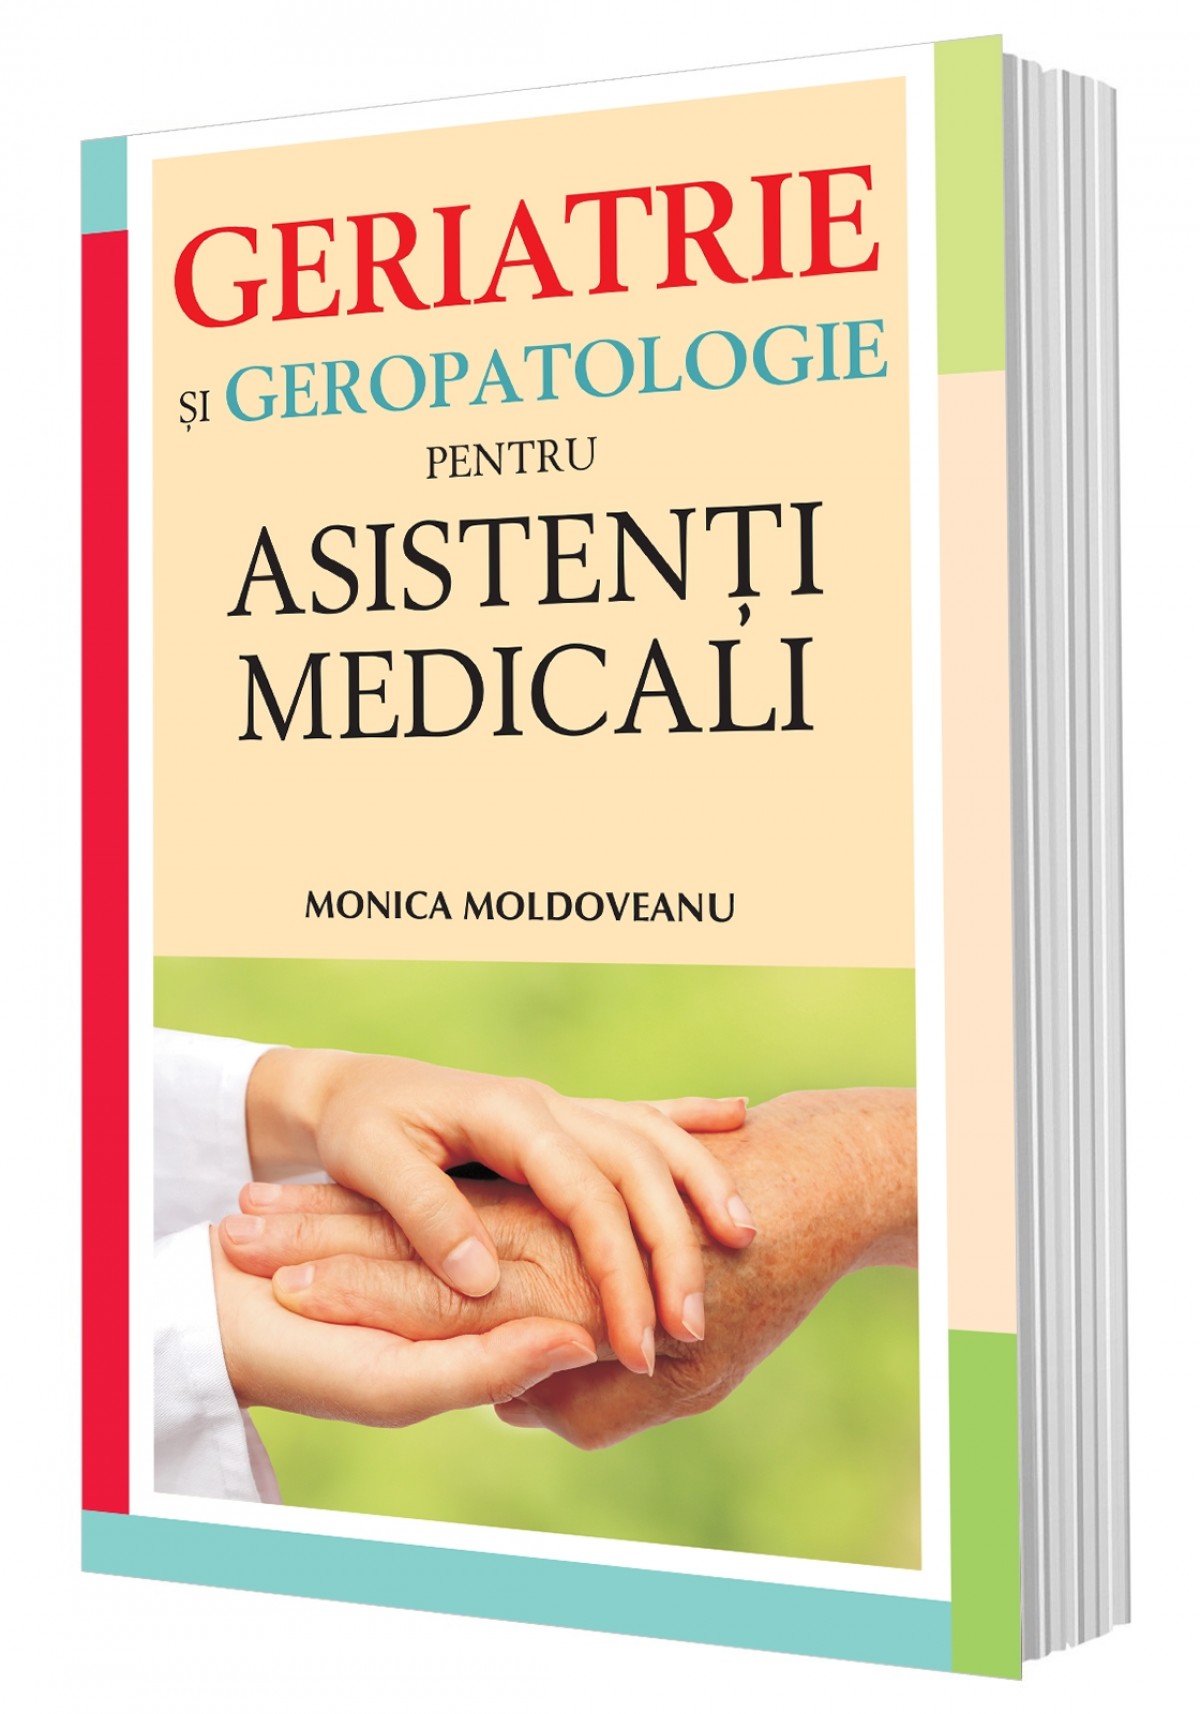 Geriatrie și geropatologie pentru asistenți medicali